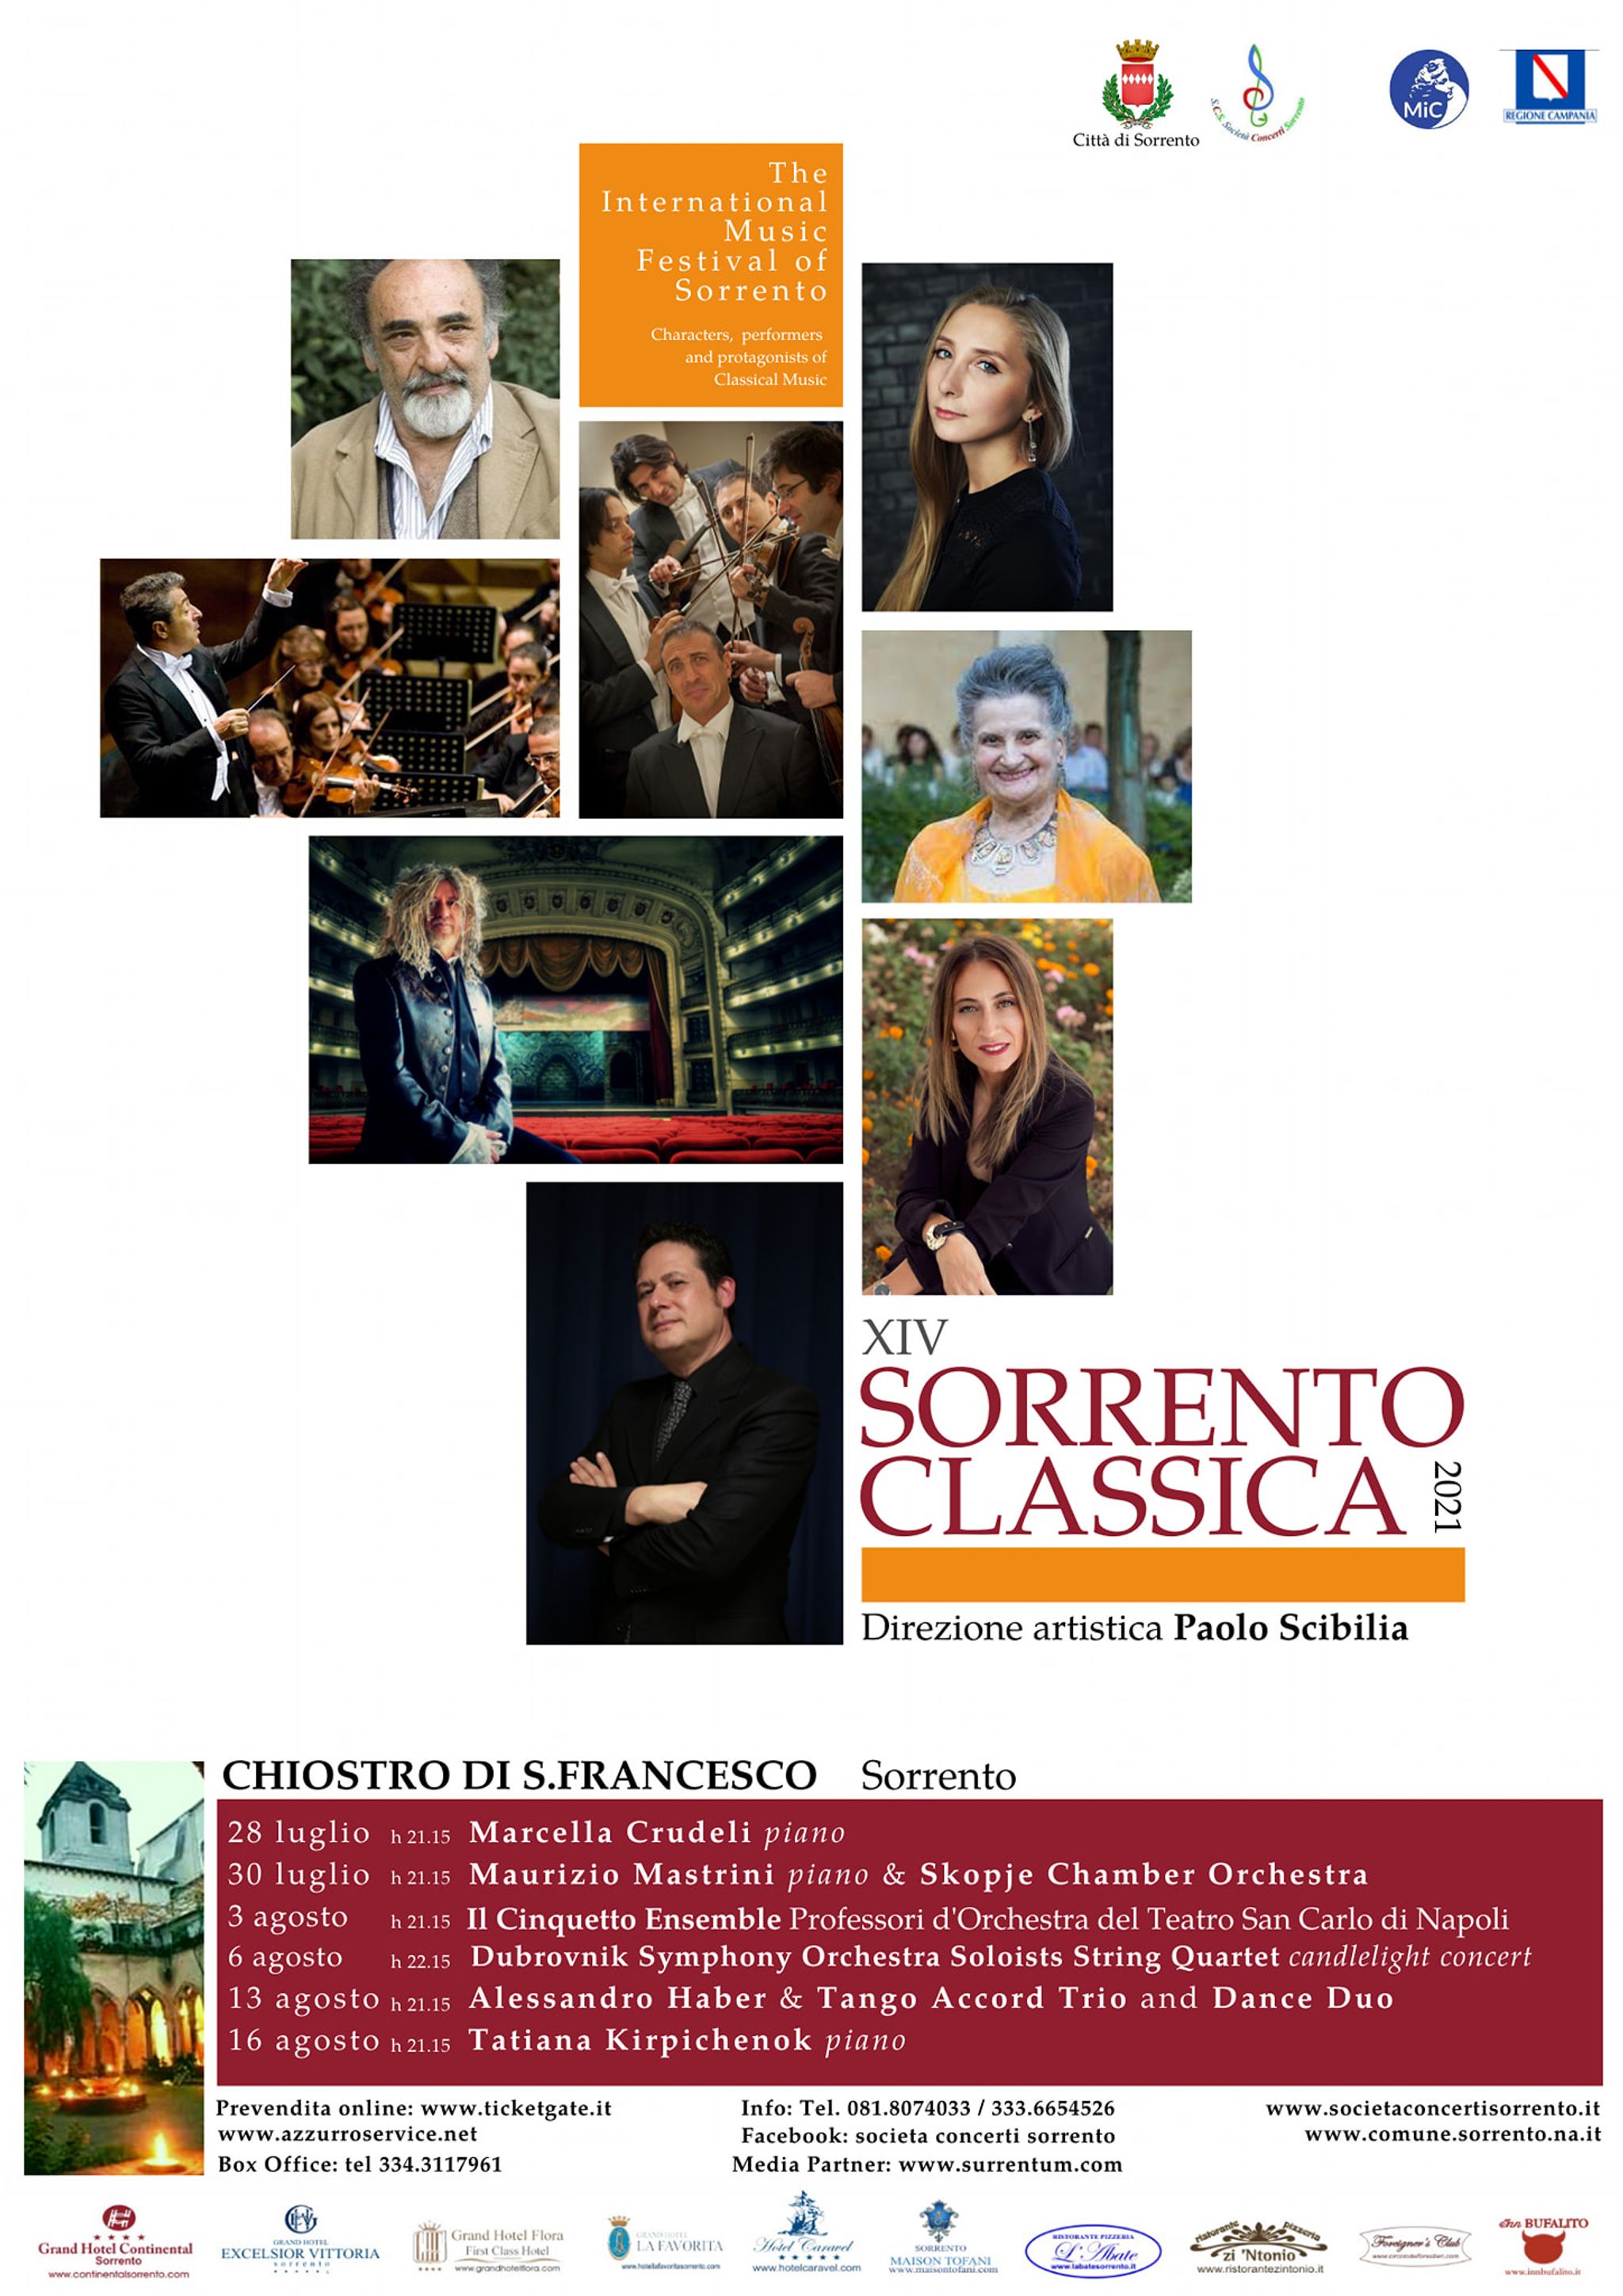 The International Music Festival of Sorrento